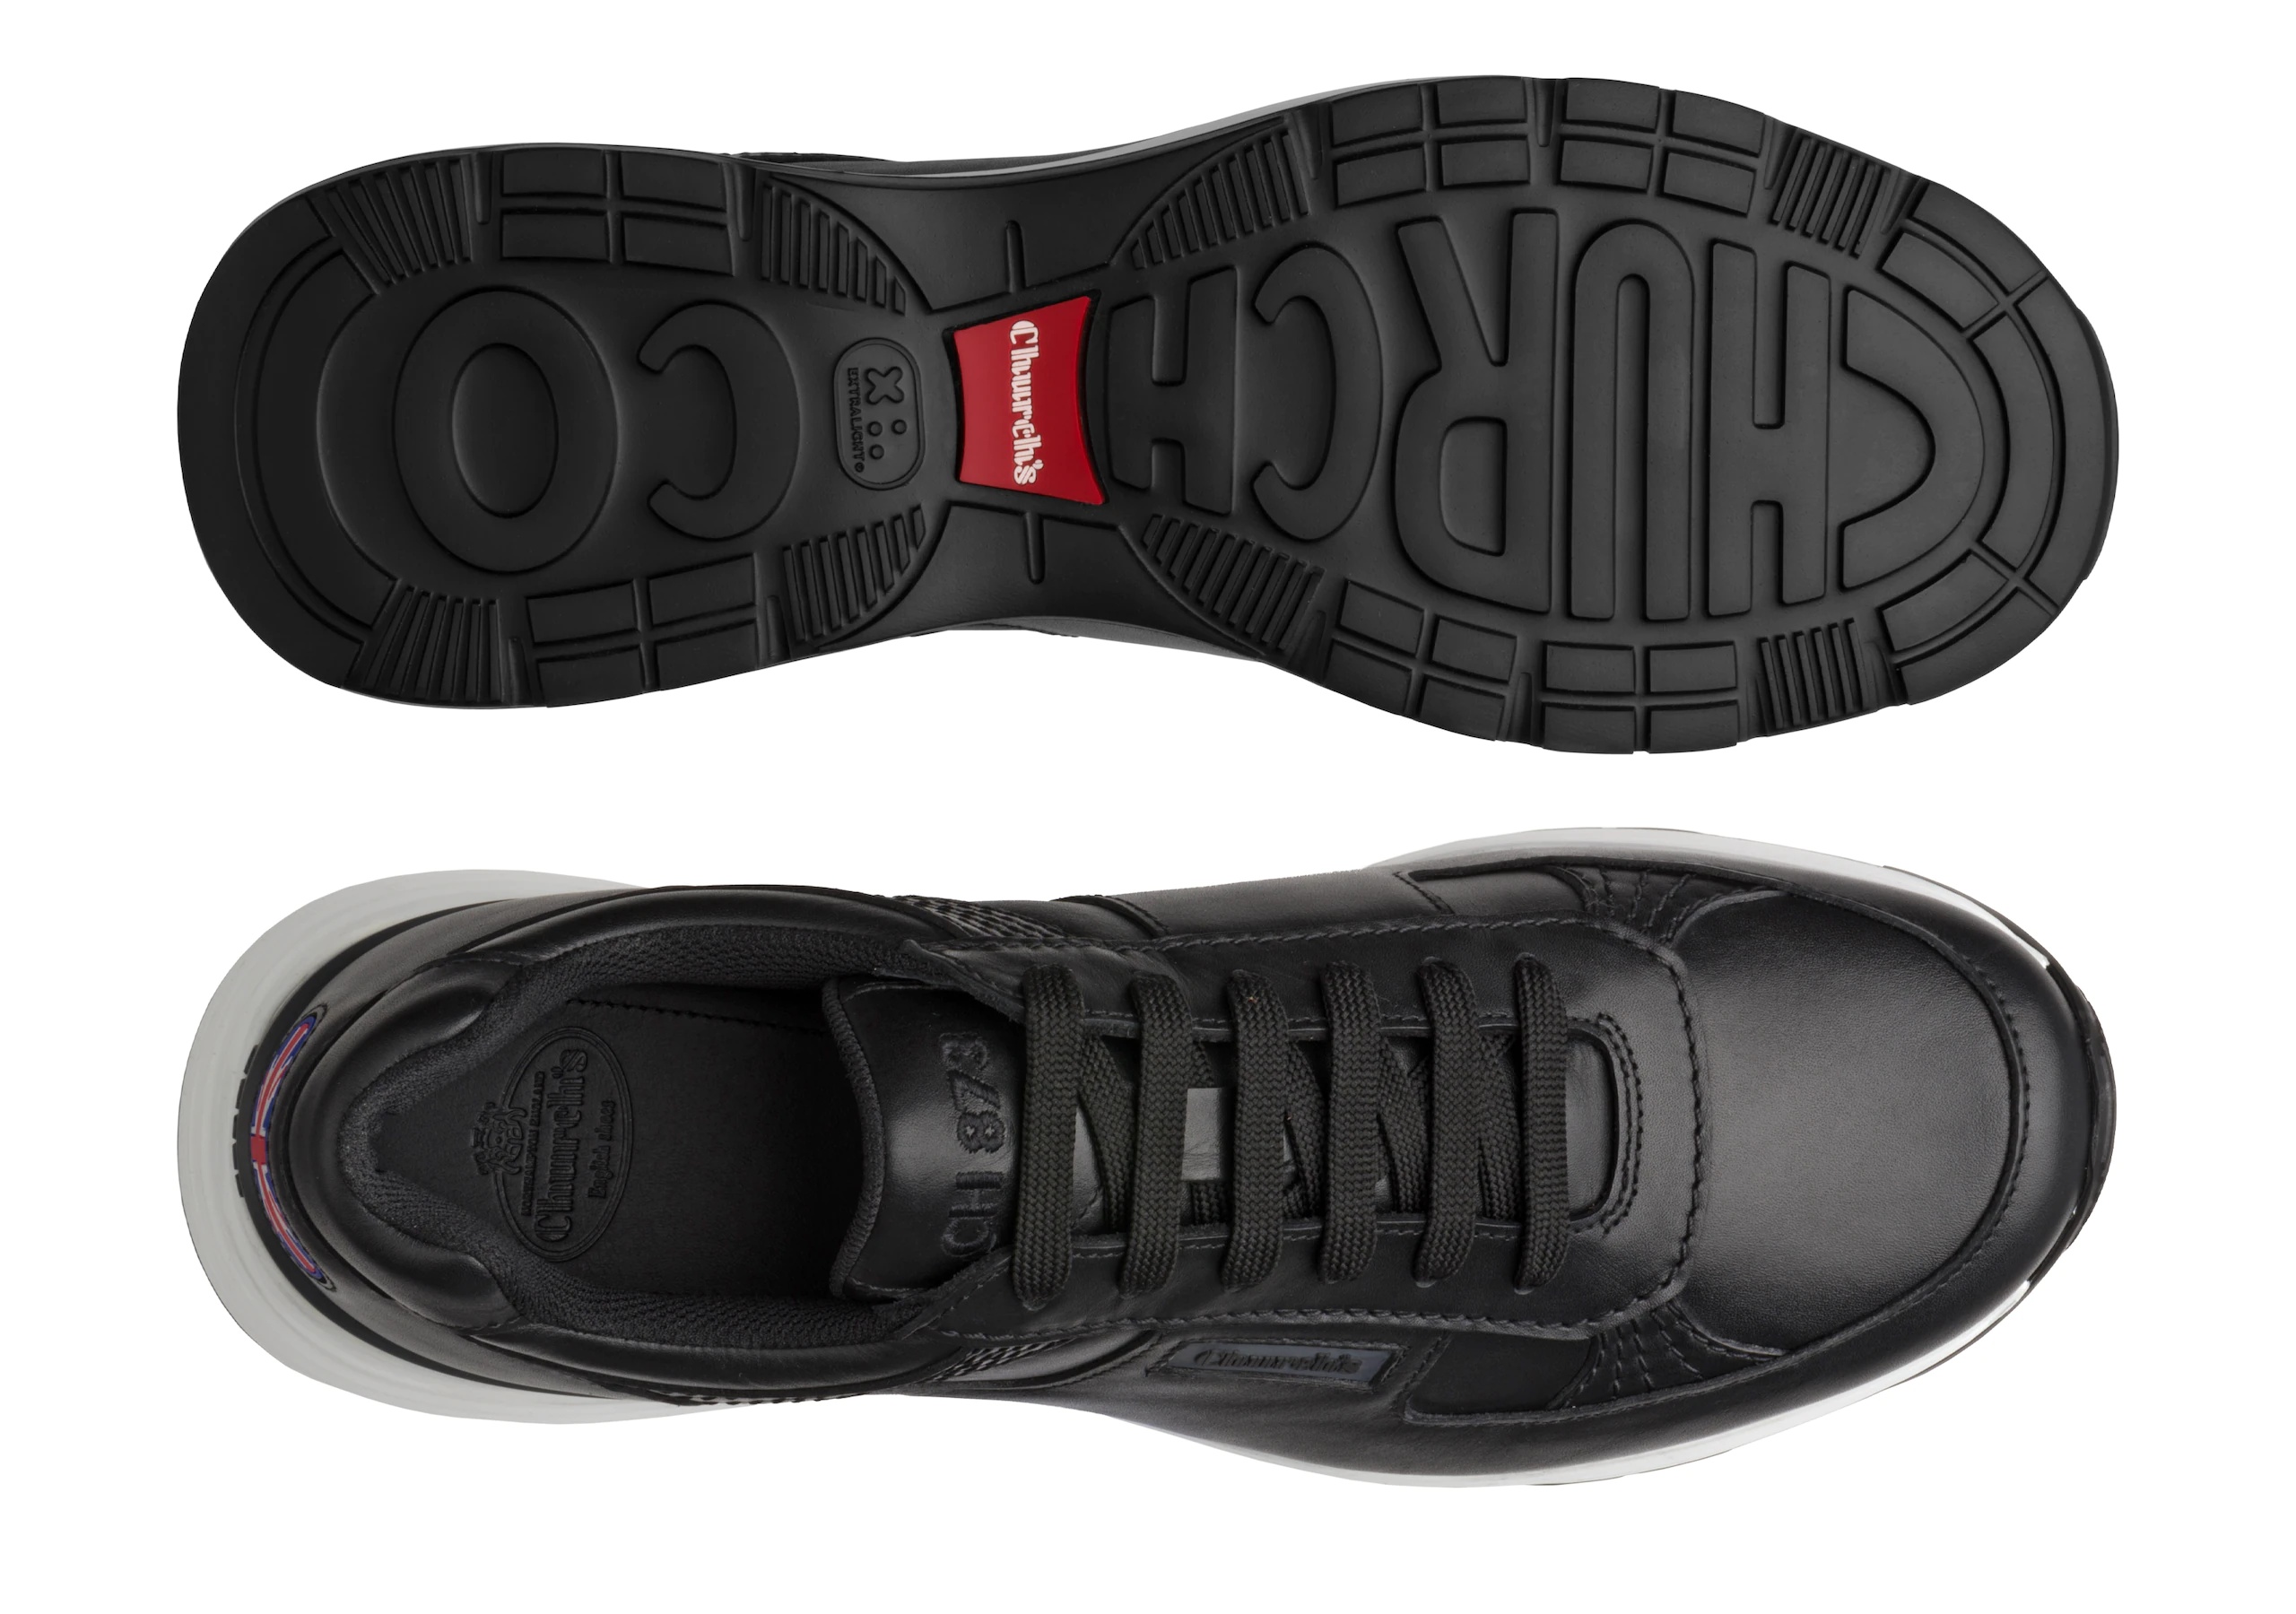 Ch873
Plume Calf Leather Retro Sneaker Black - 3